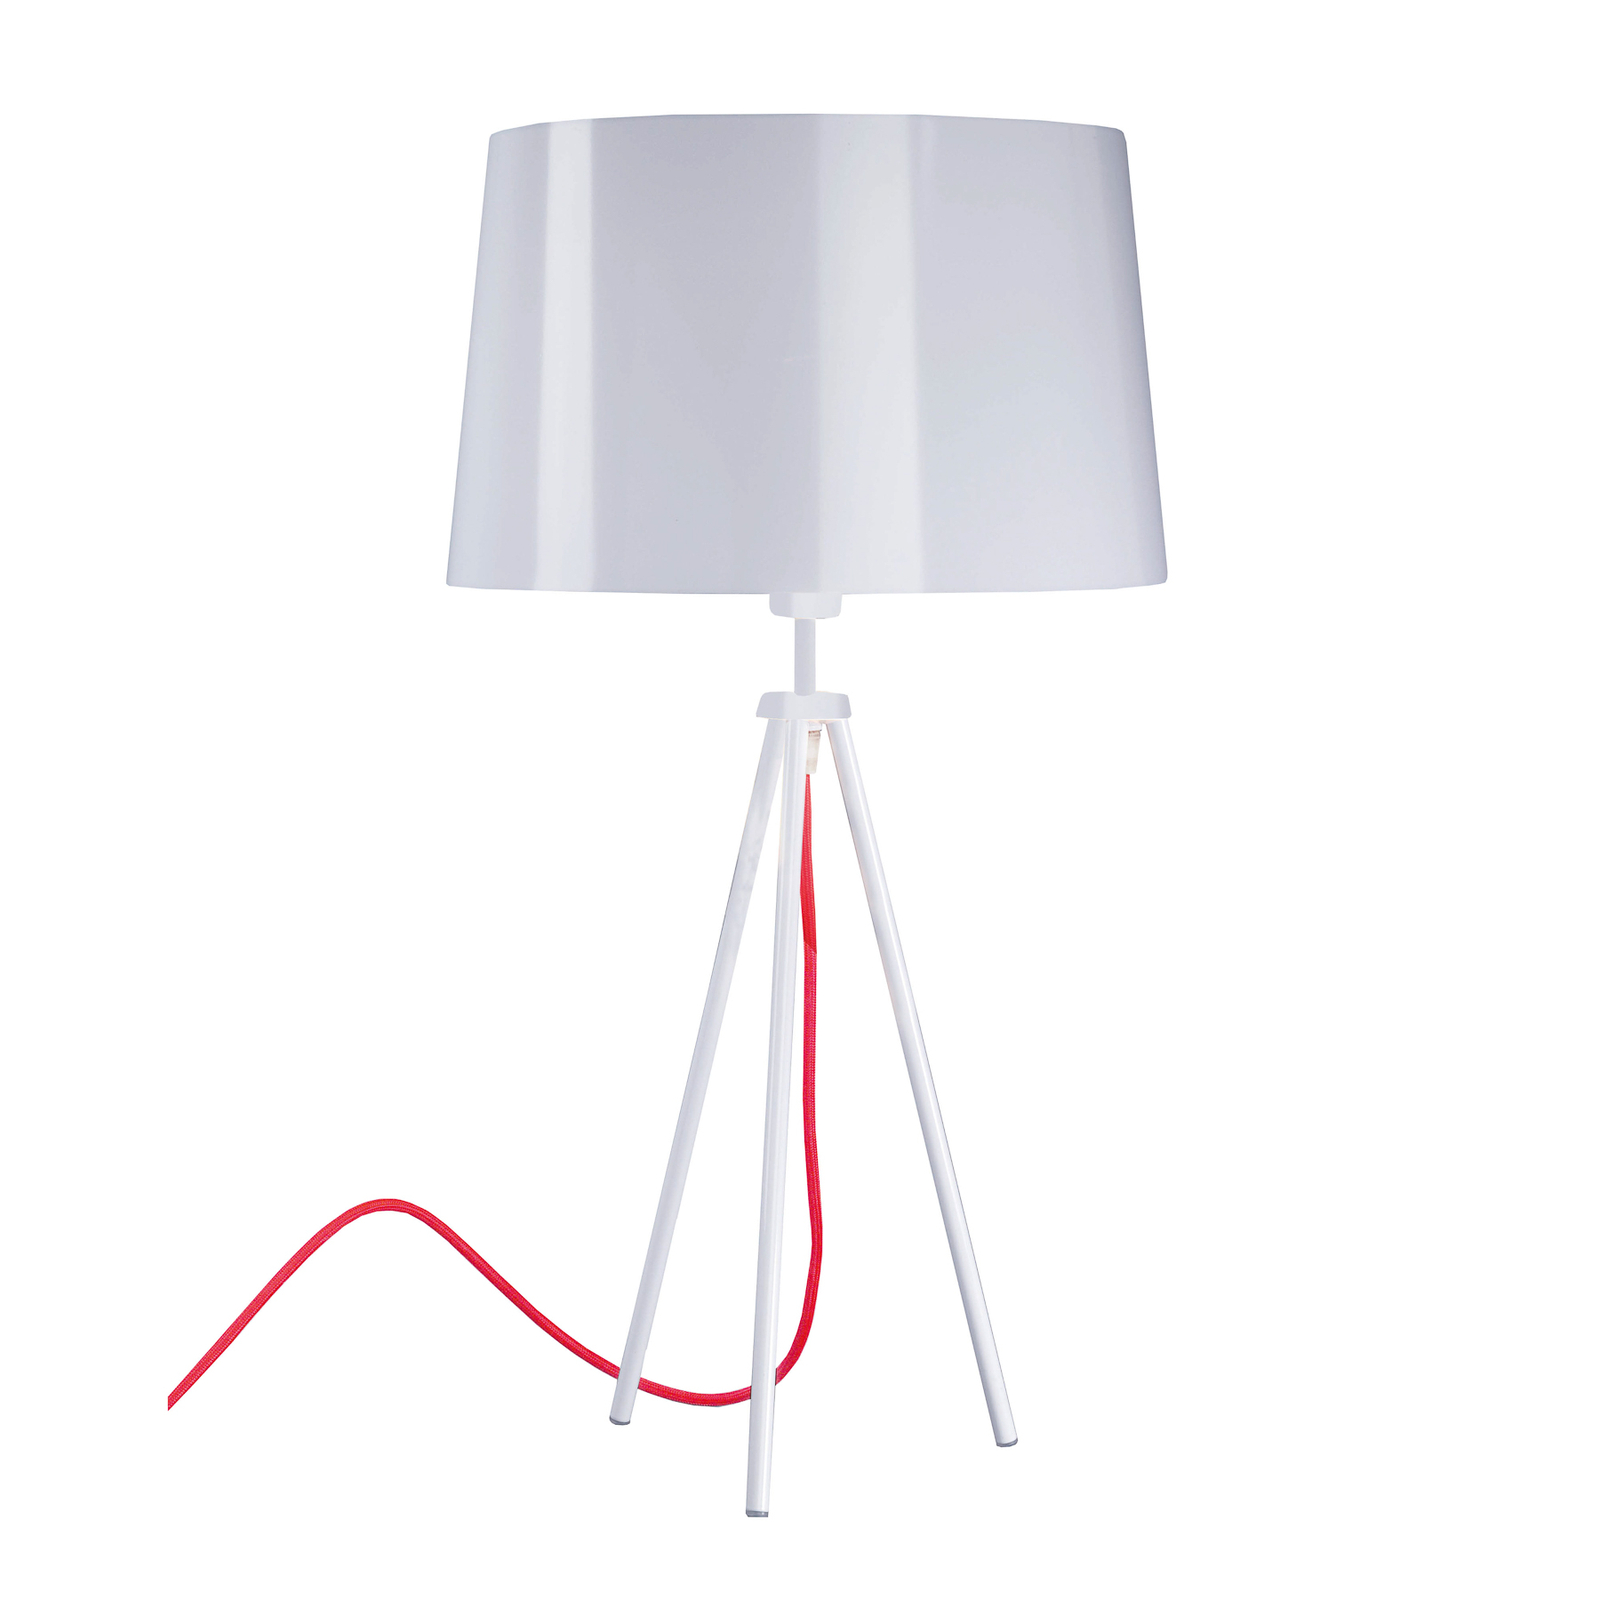 Aluminor Tropic tafellamp wit, kabel rood